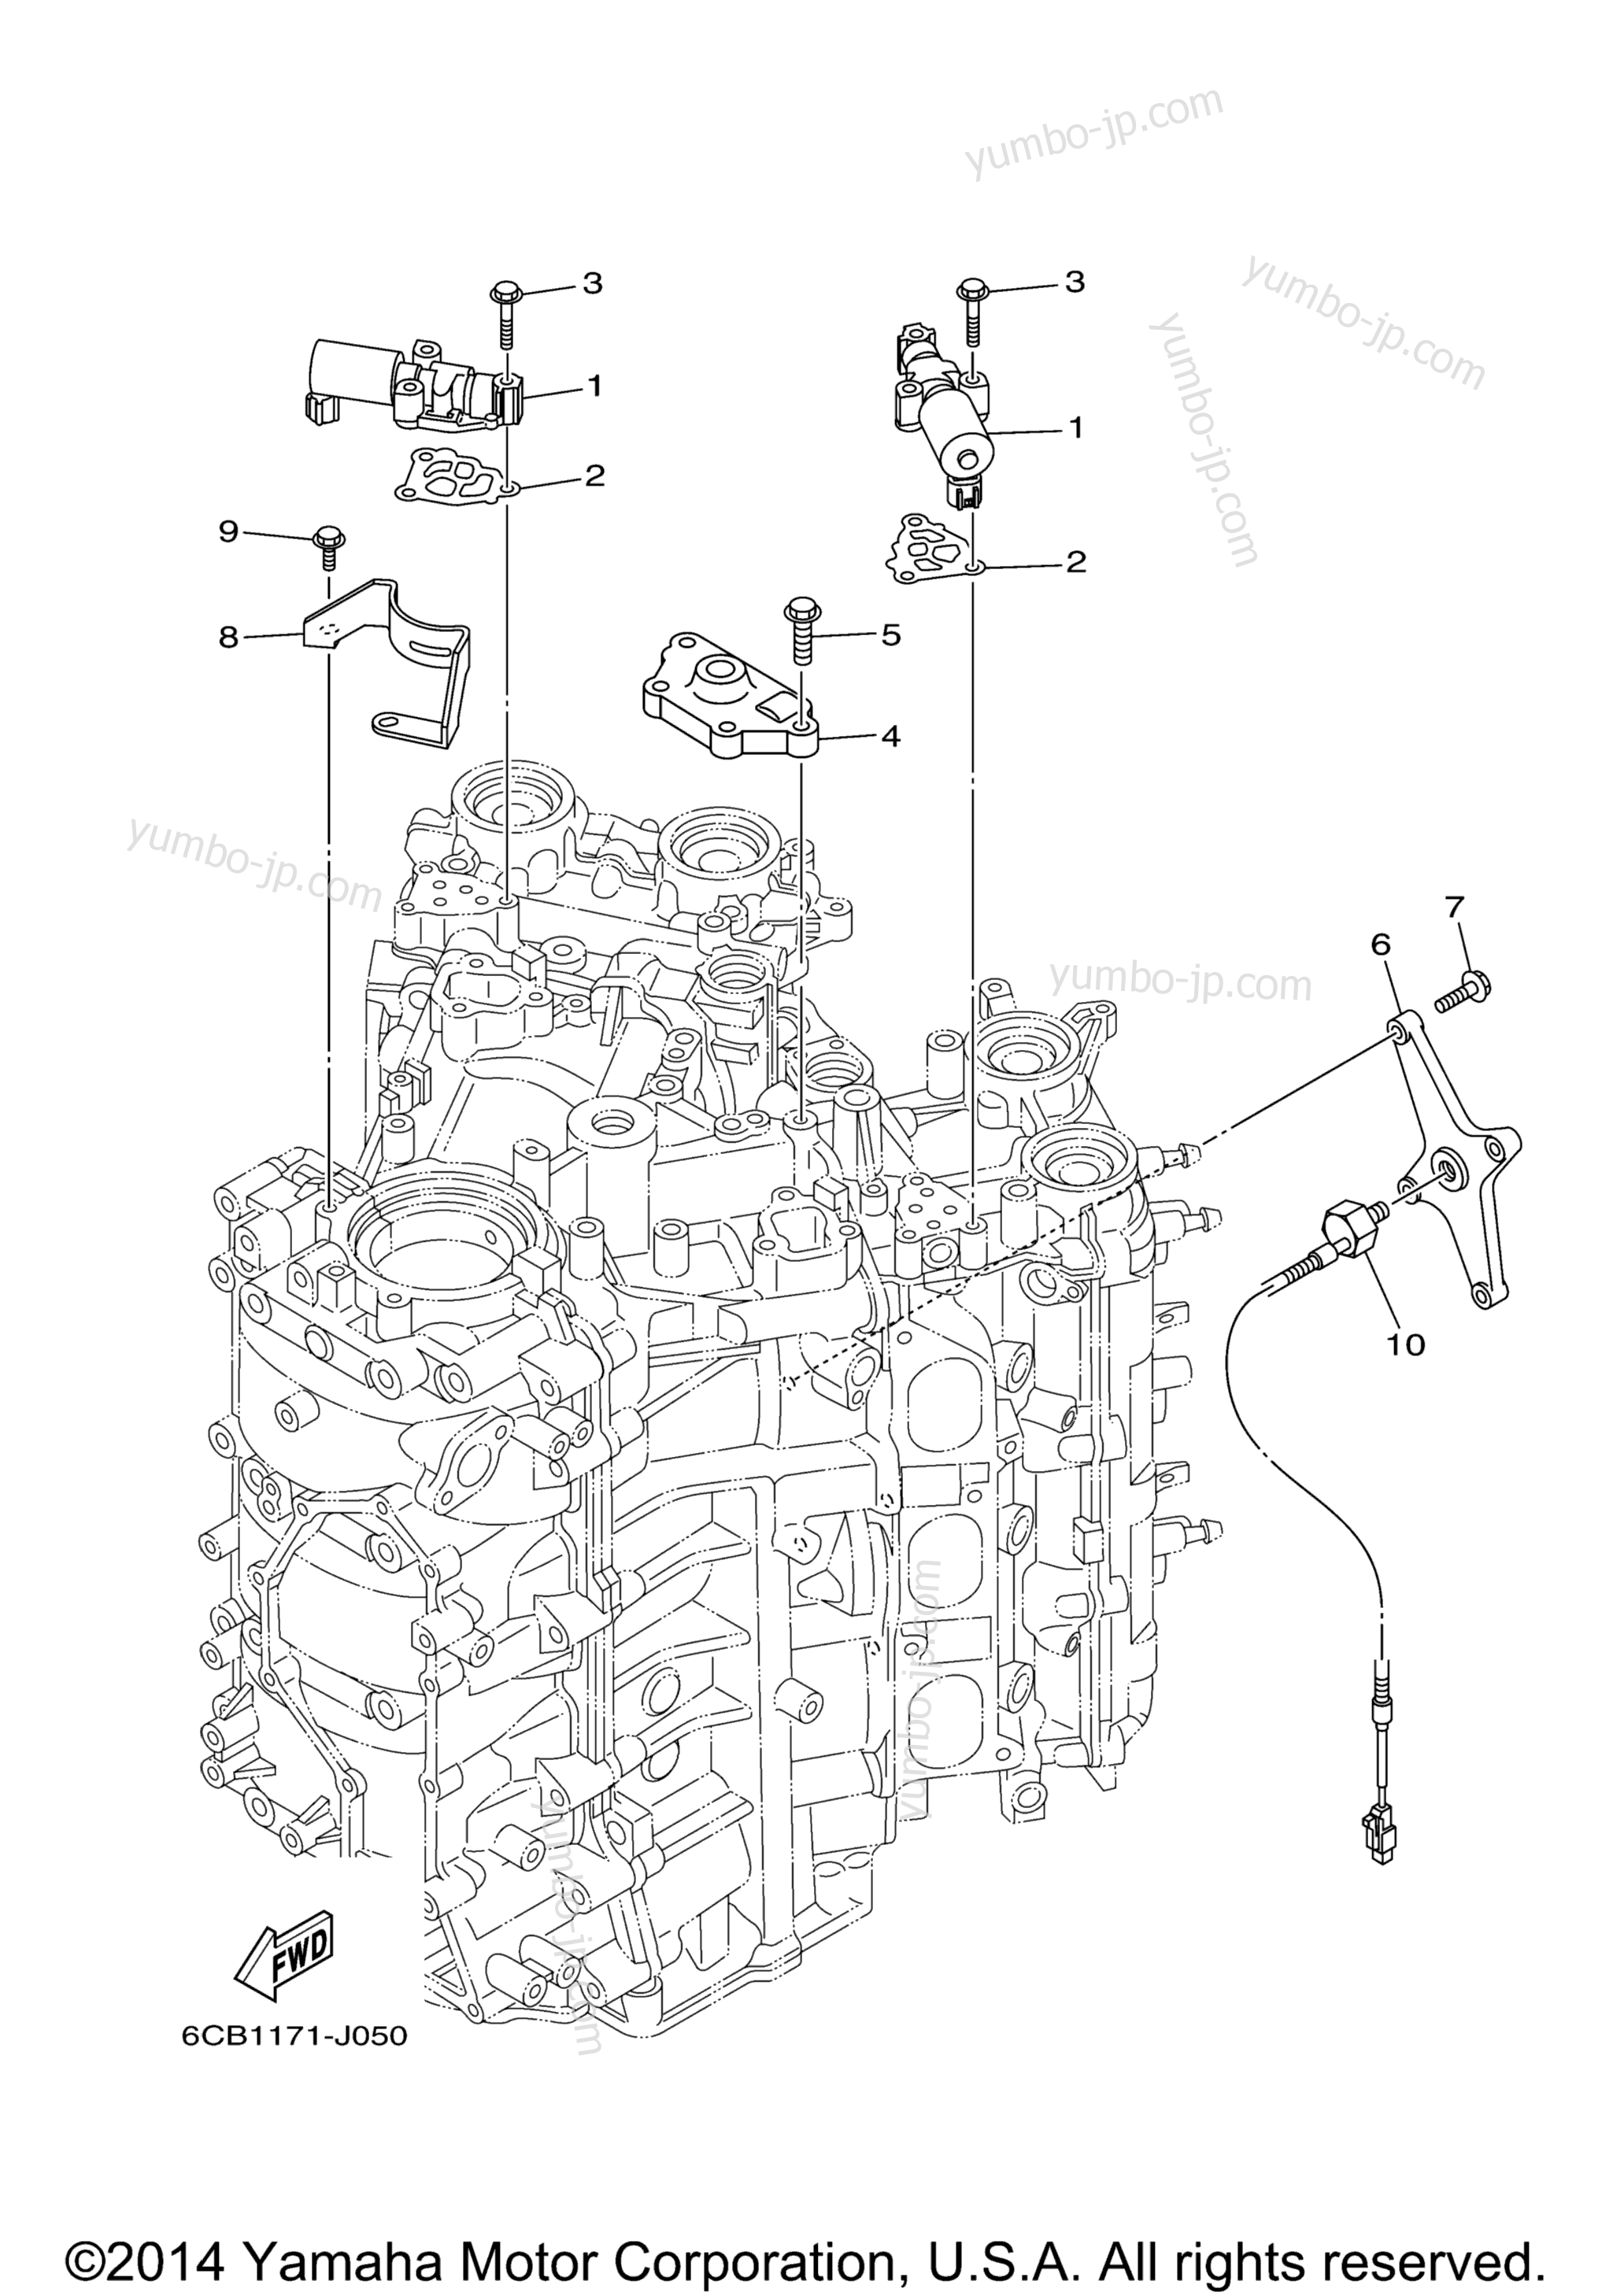 Cylinder Crankcase 3 для лодочных моторов YAMAHA F300UCA_04 (0411) 2006 г.